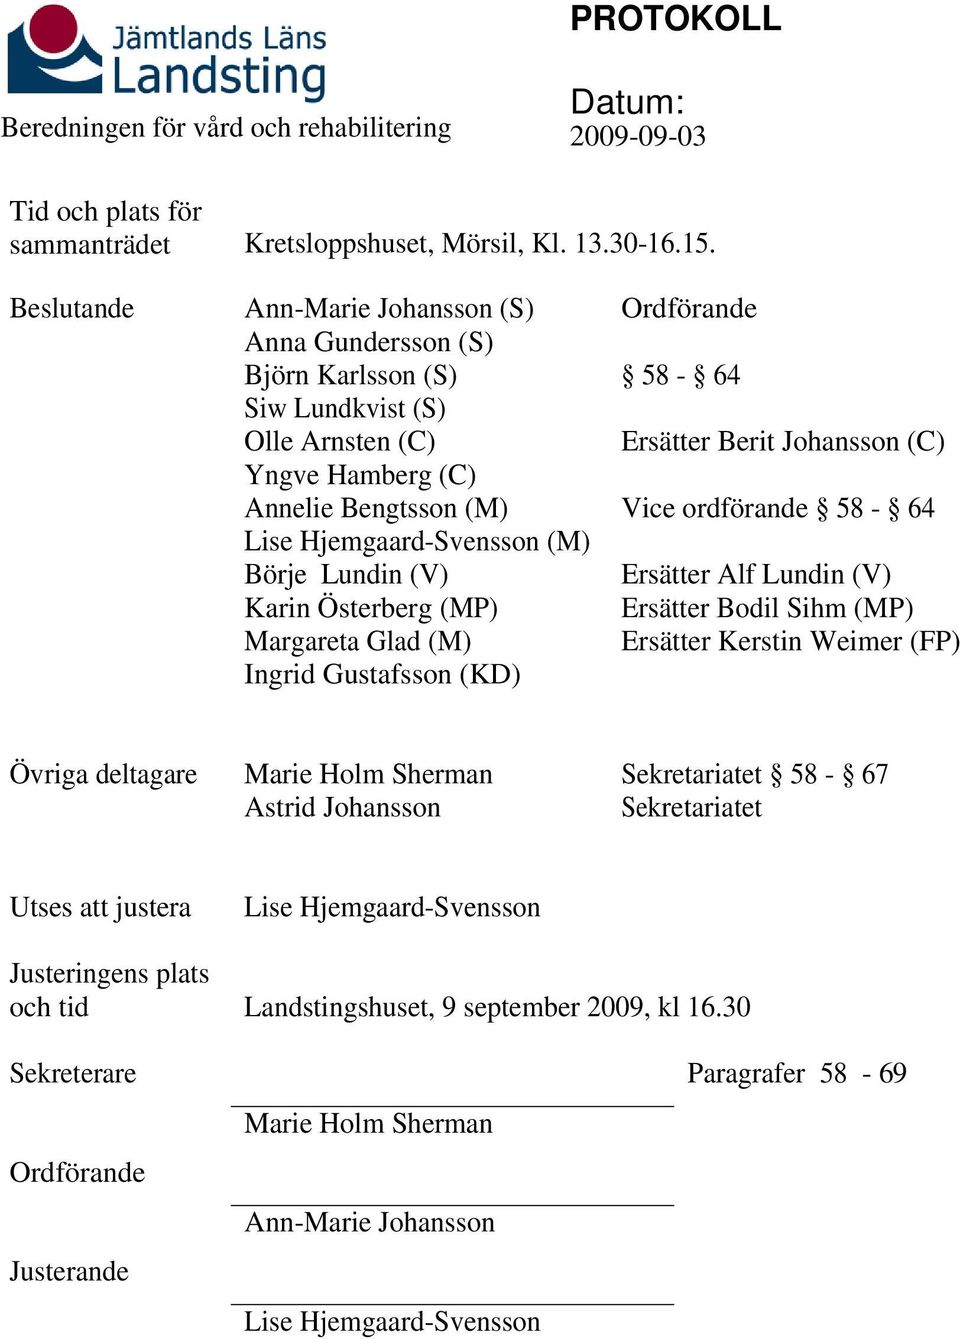 Karin Österberg (MP) Margareta Glad (M) Ingrid Gustafsson (KD) Ordförande 58-64 Ersätter Berit Johansson (C) Vice ordförande 58-64 Ersätter Alf Lundin (V) Ersätter Bodil Sihm (MP) Ersätter Kerstin